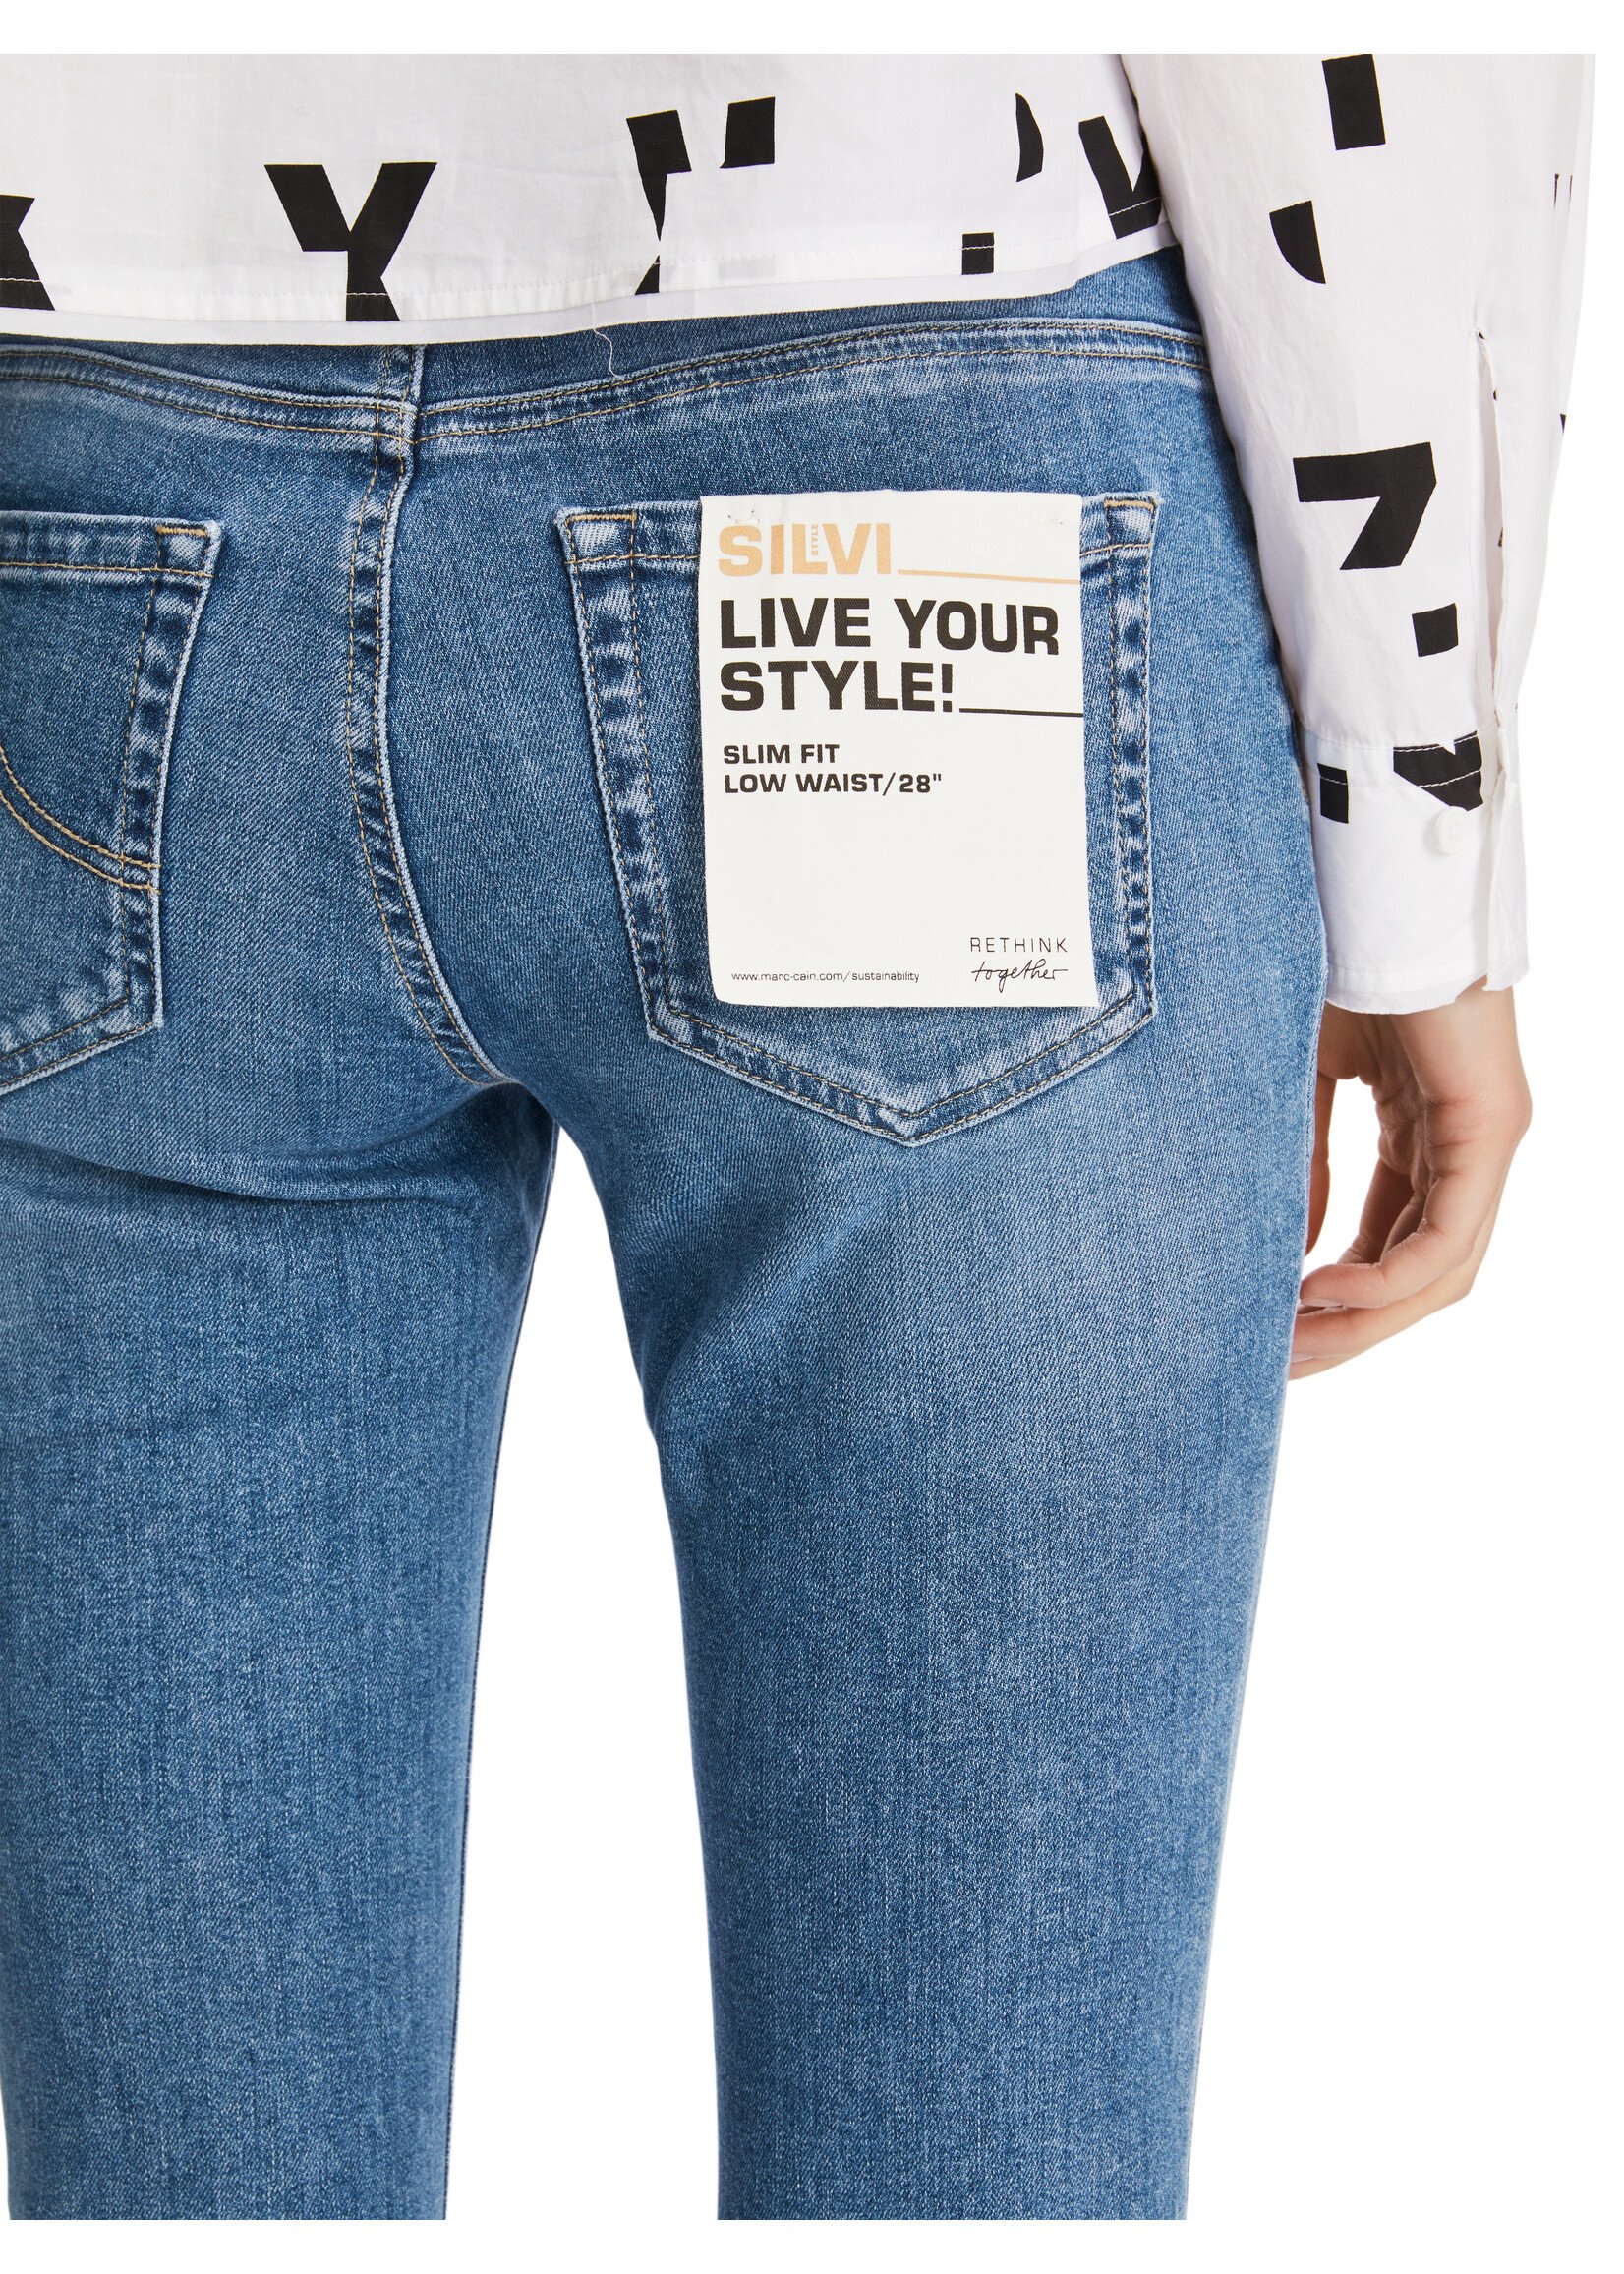 Marccain Pants Jeans XP 82.12 D01 353